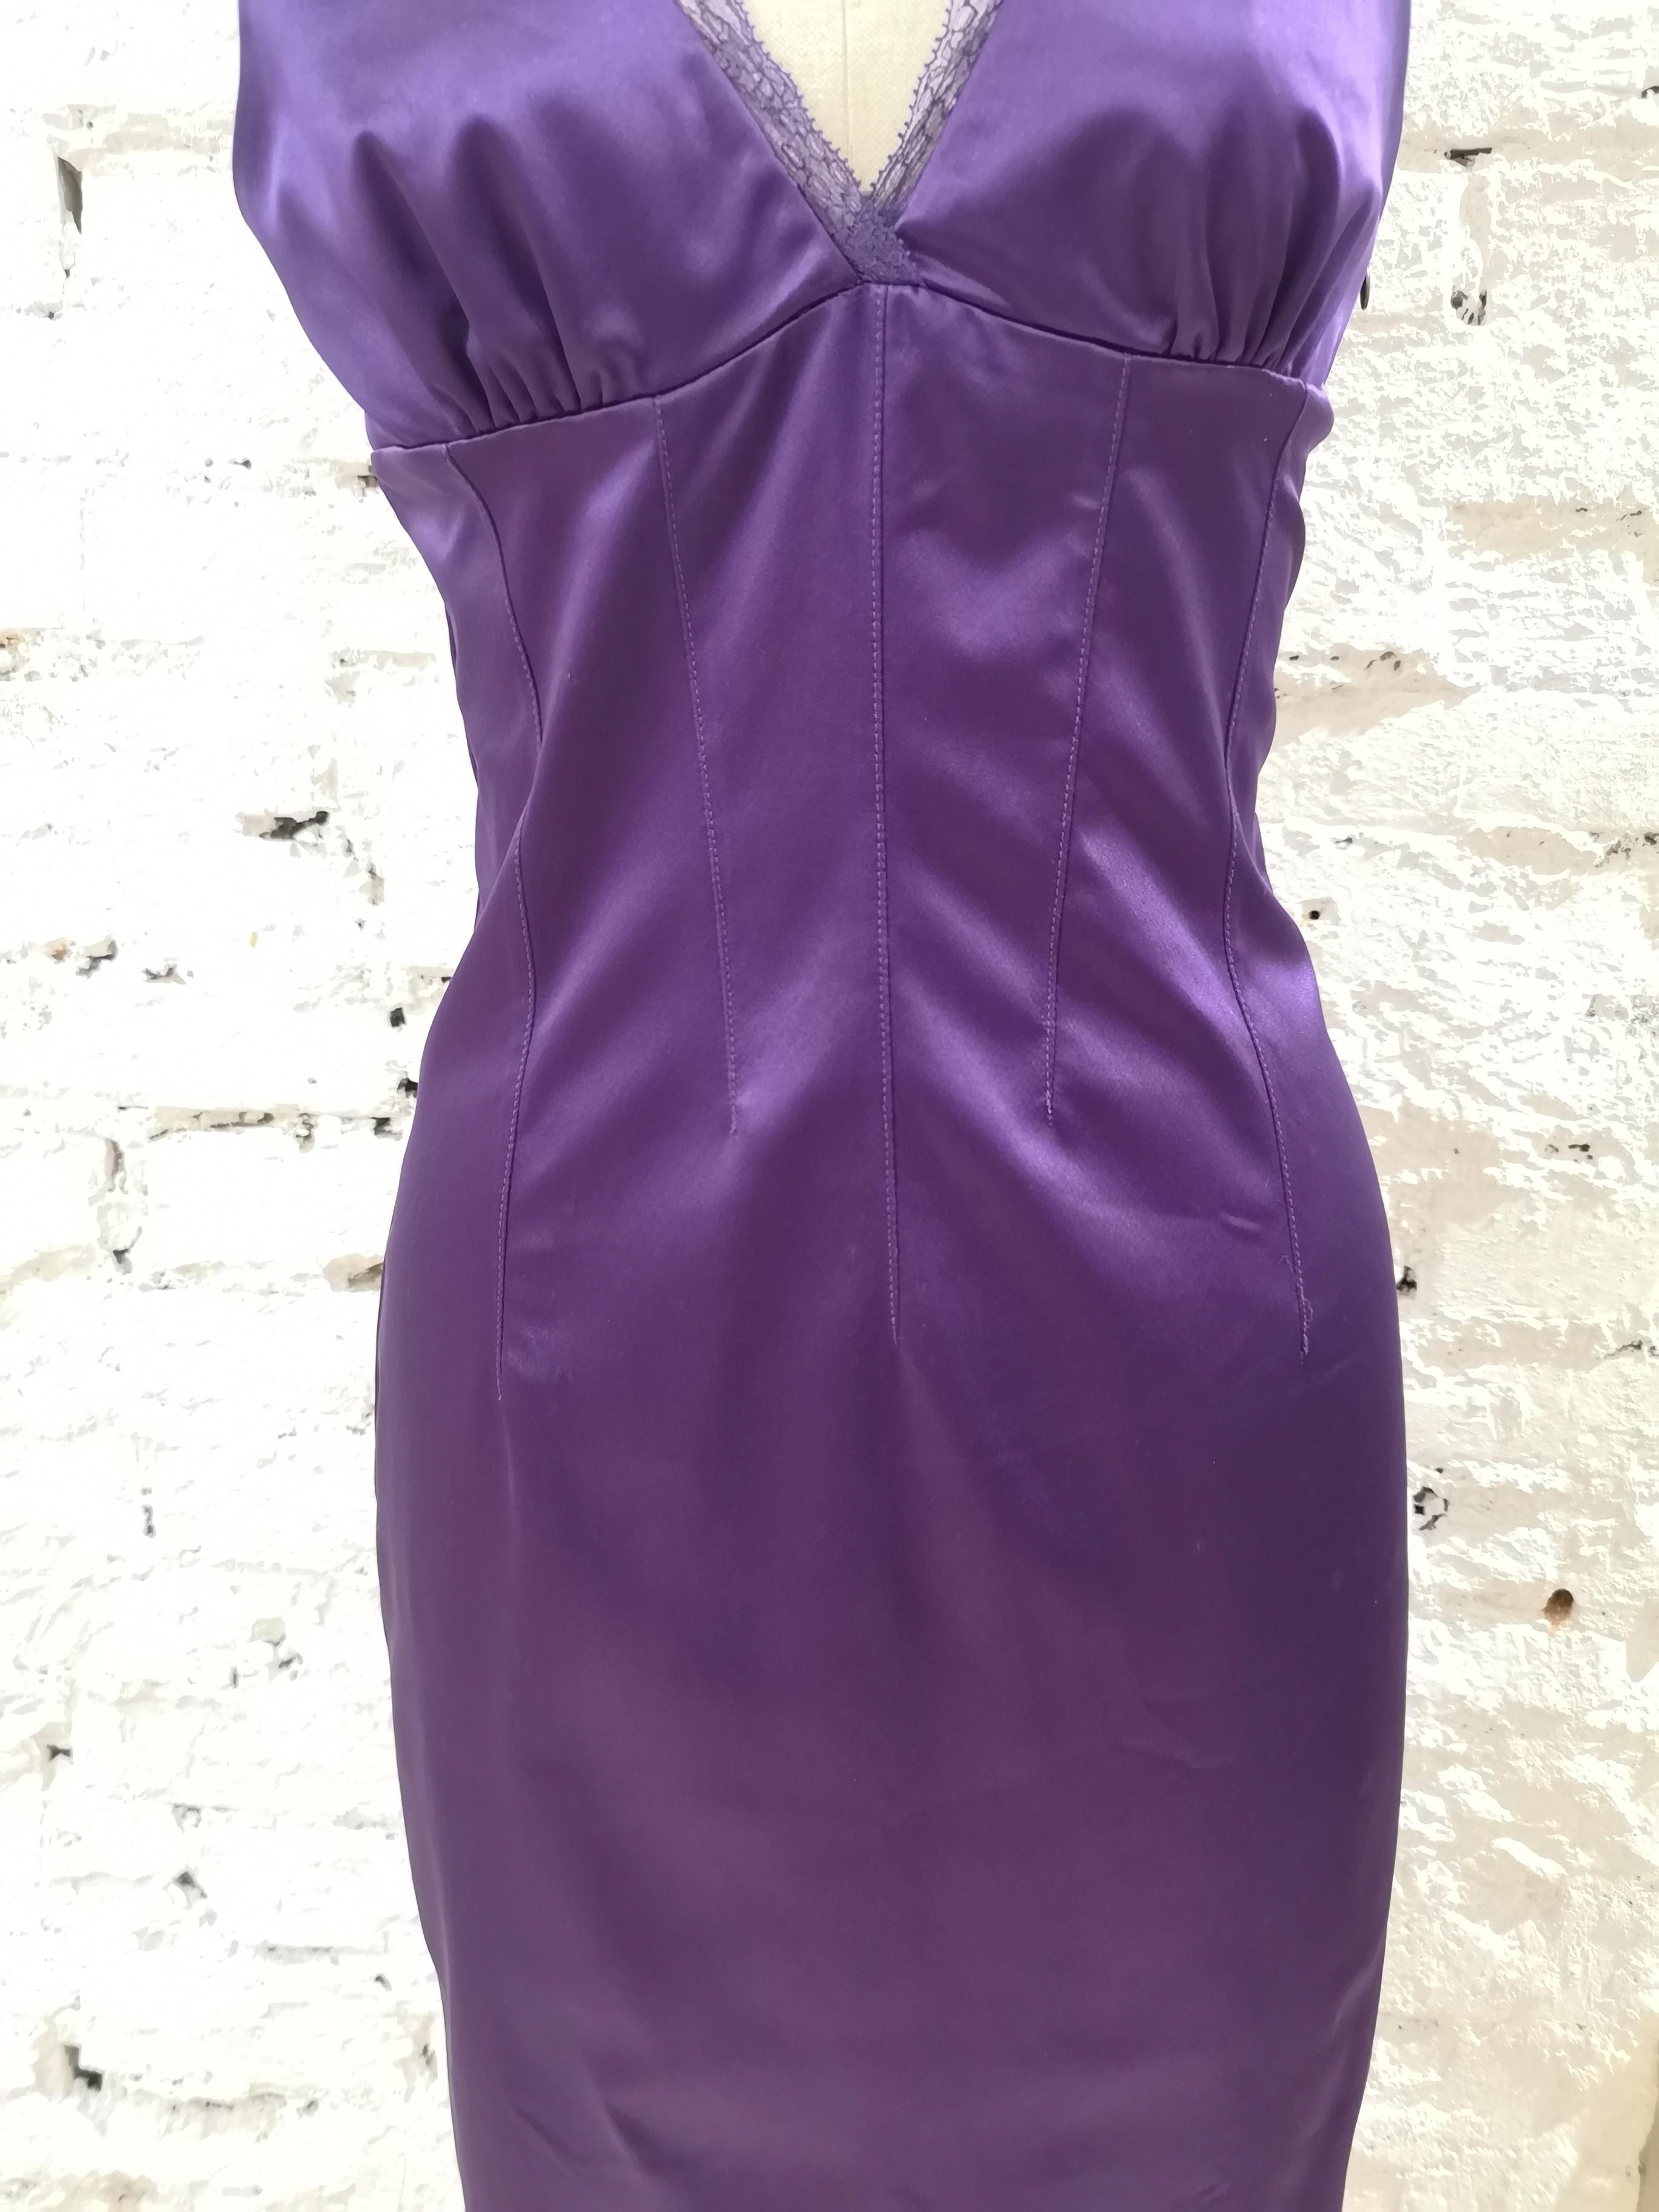 dolce gabbana purple dress